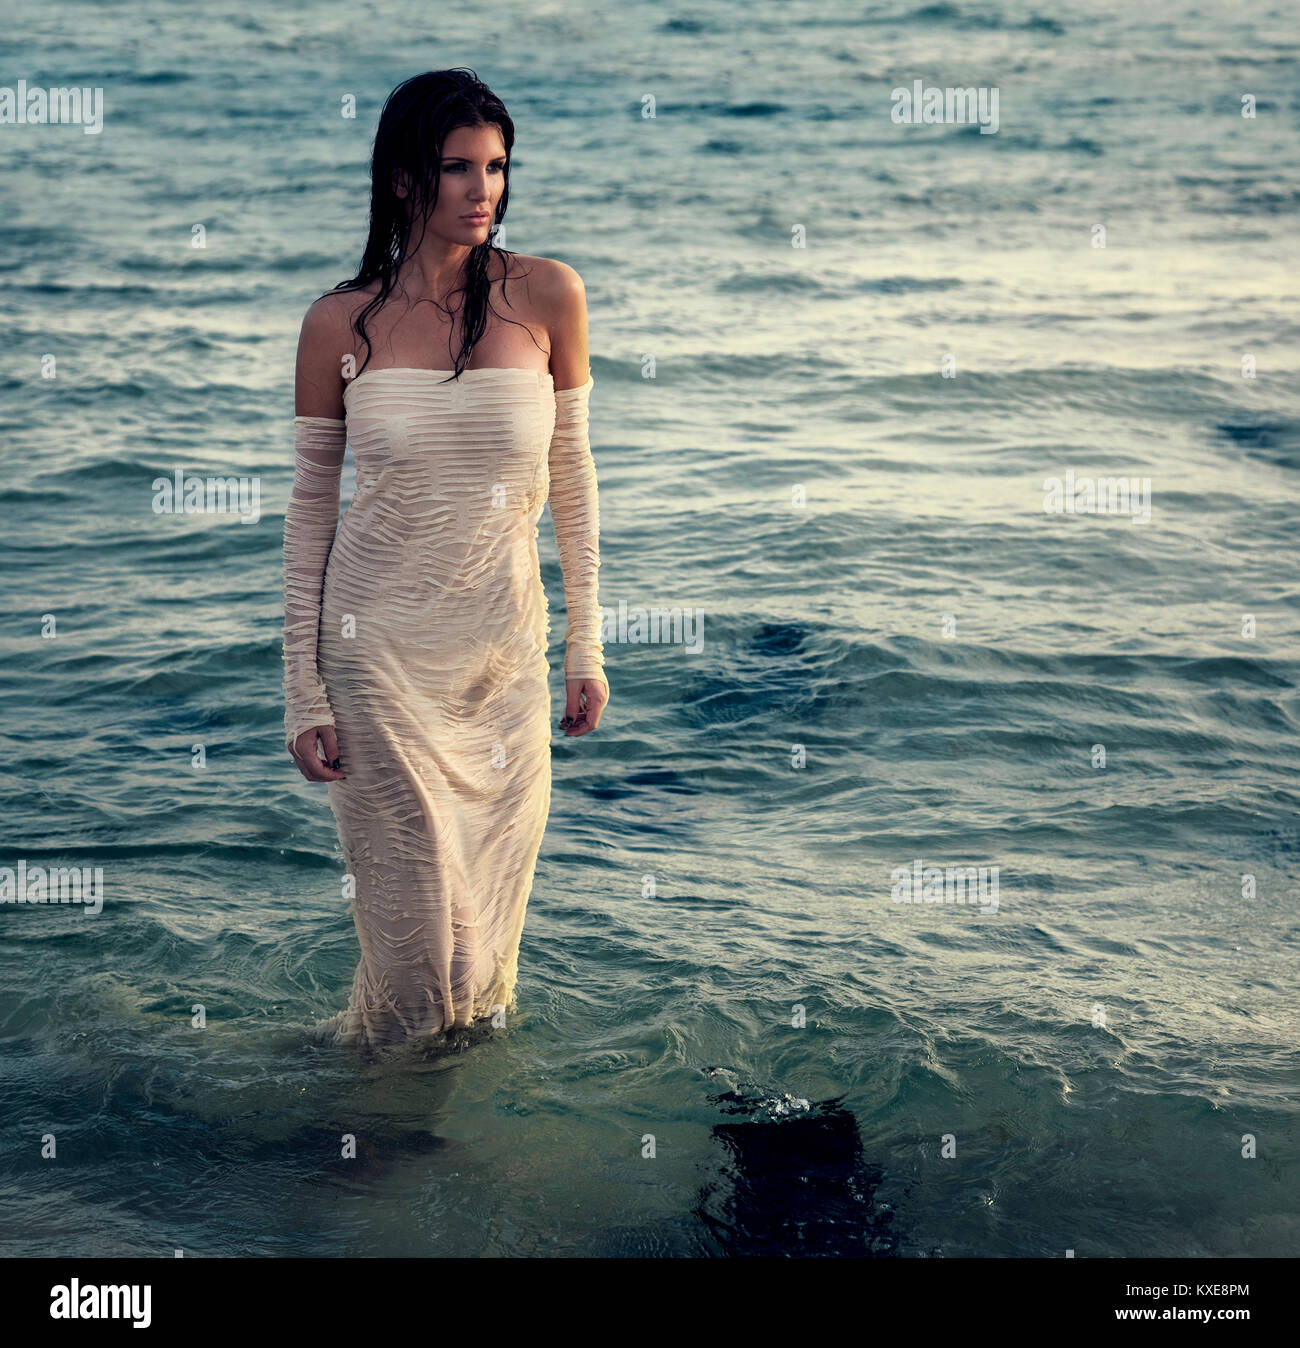 Schöne Frau in weißem Kleid auf dem Strand Stockfotografie - Alamy